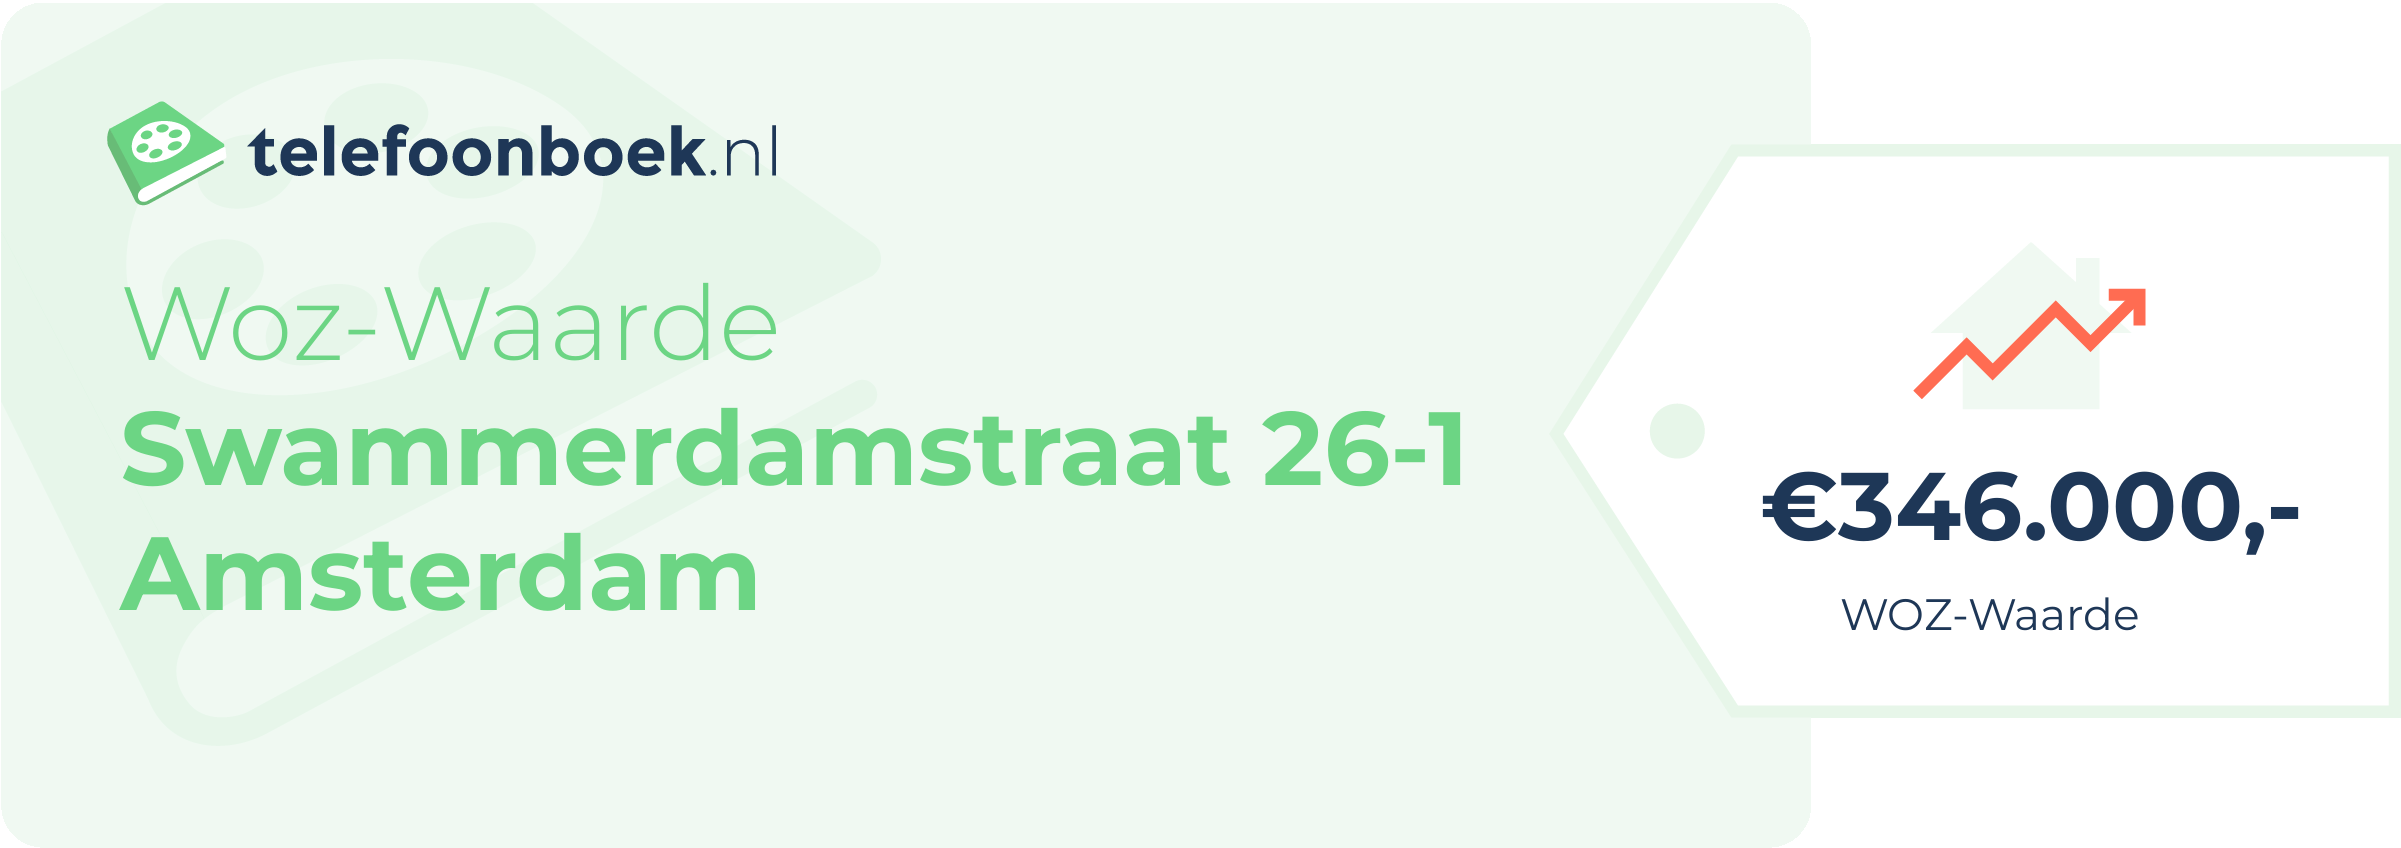 WOZ-waarde Swammerdamstraat 26-1 Amsterdam